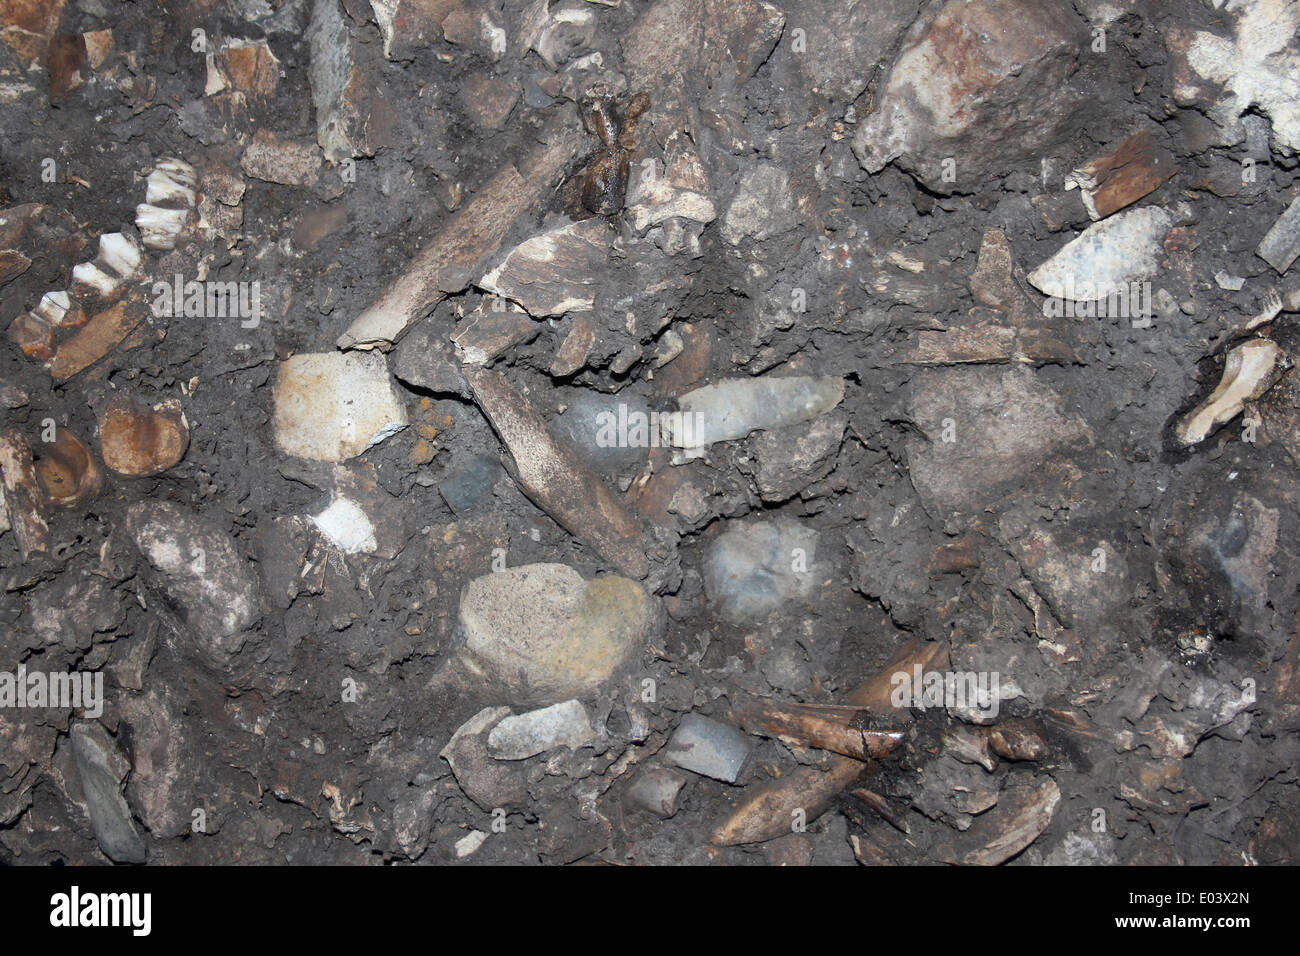 Grotta piano con fossili, Francia Foto Stock